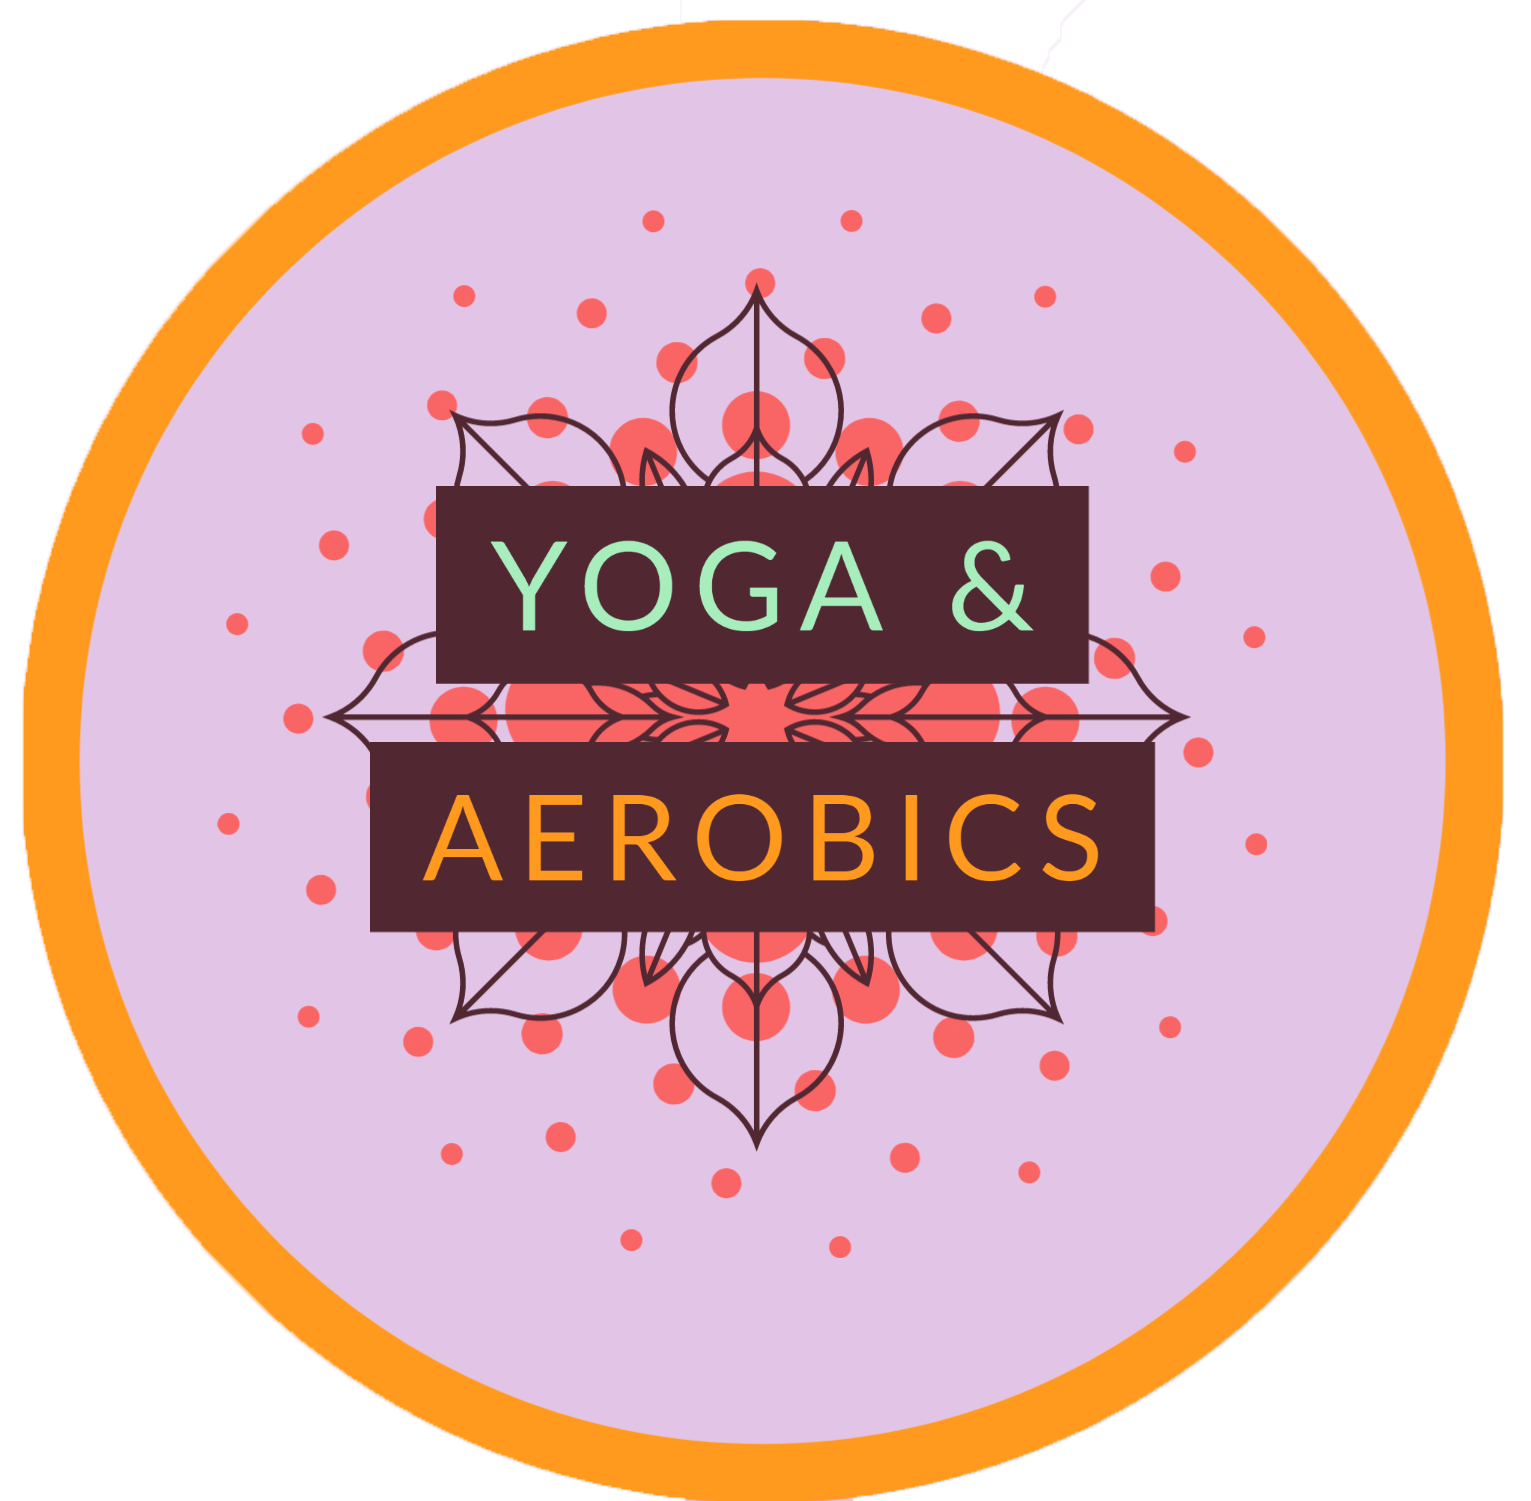 Yoga and aerobics